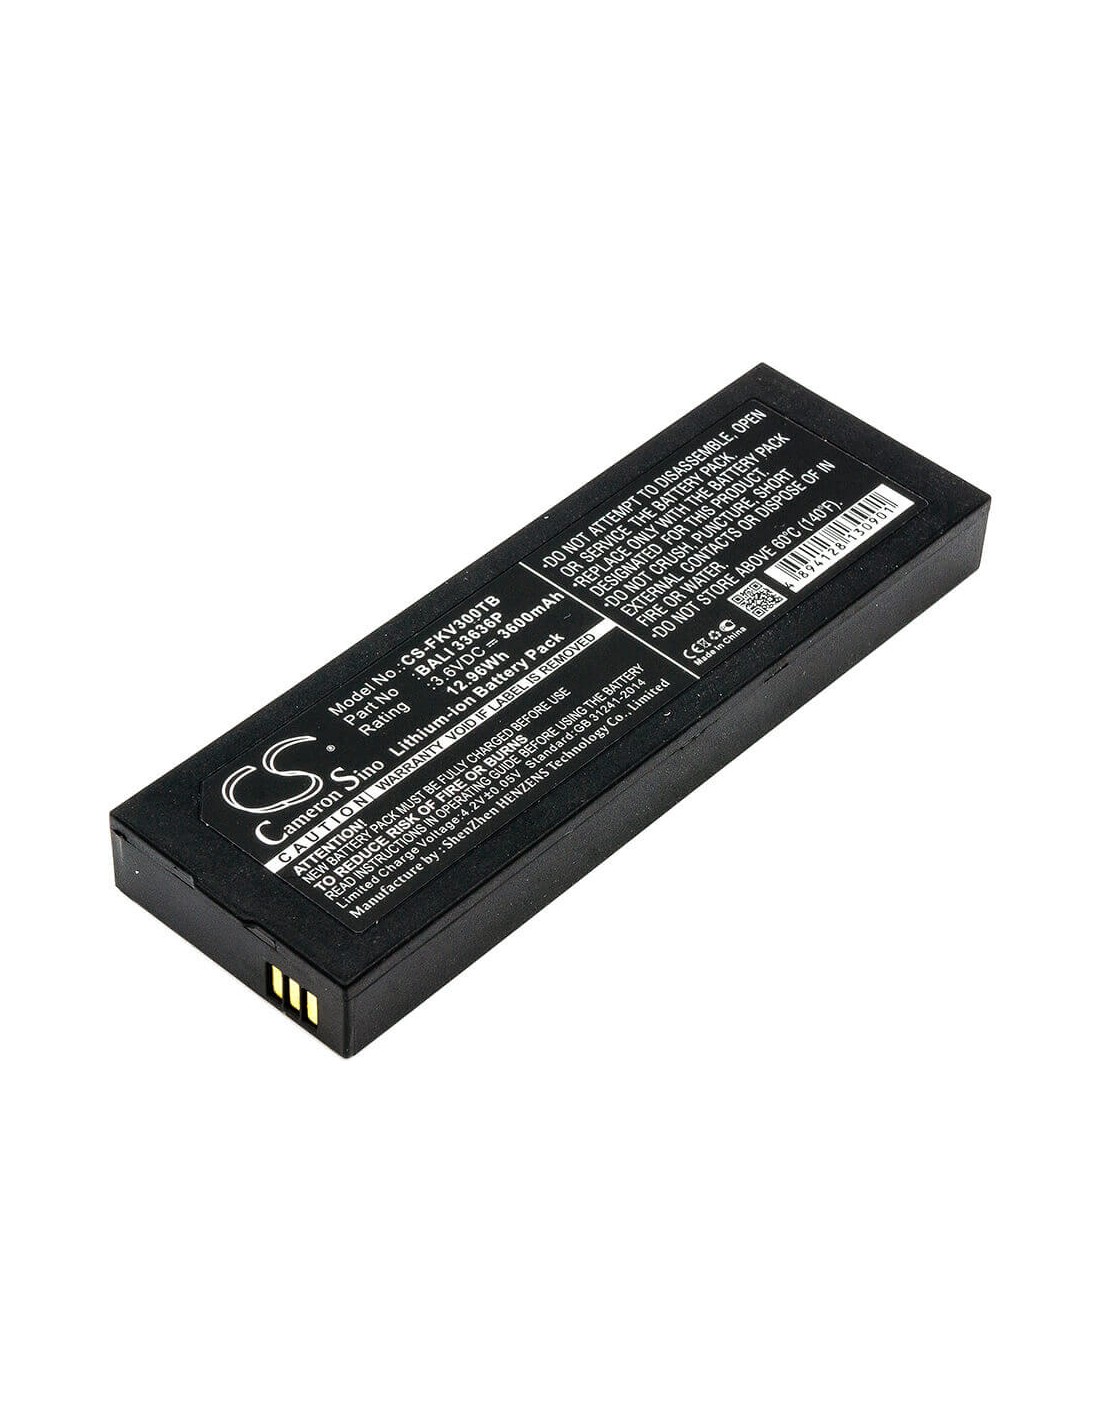 Battery for Fanvision, K-ivt-300-gd-b 3.6V, 3600mAh - 2.22Wh